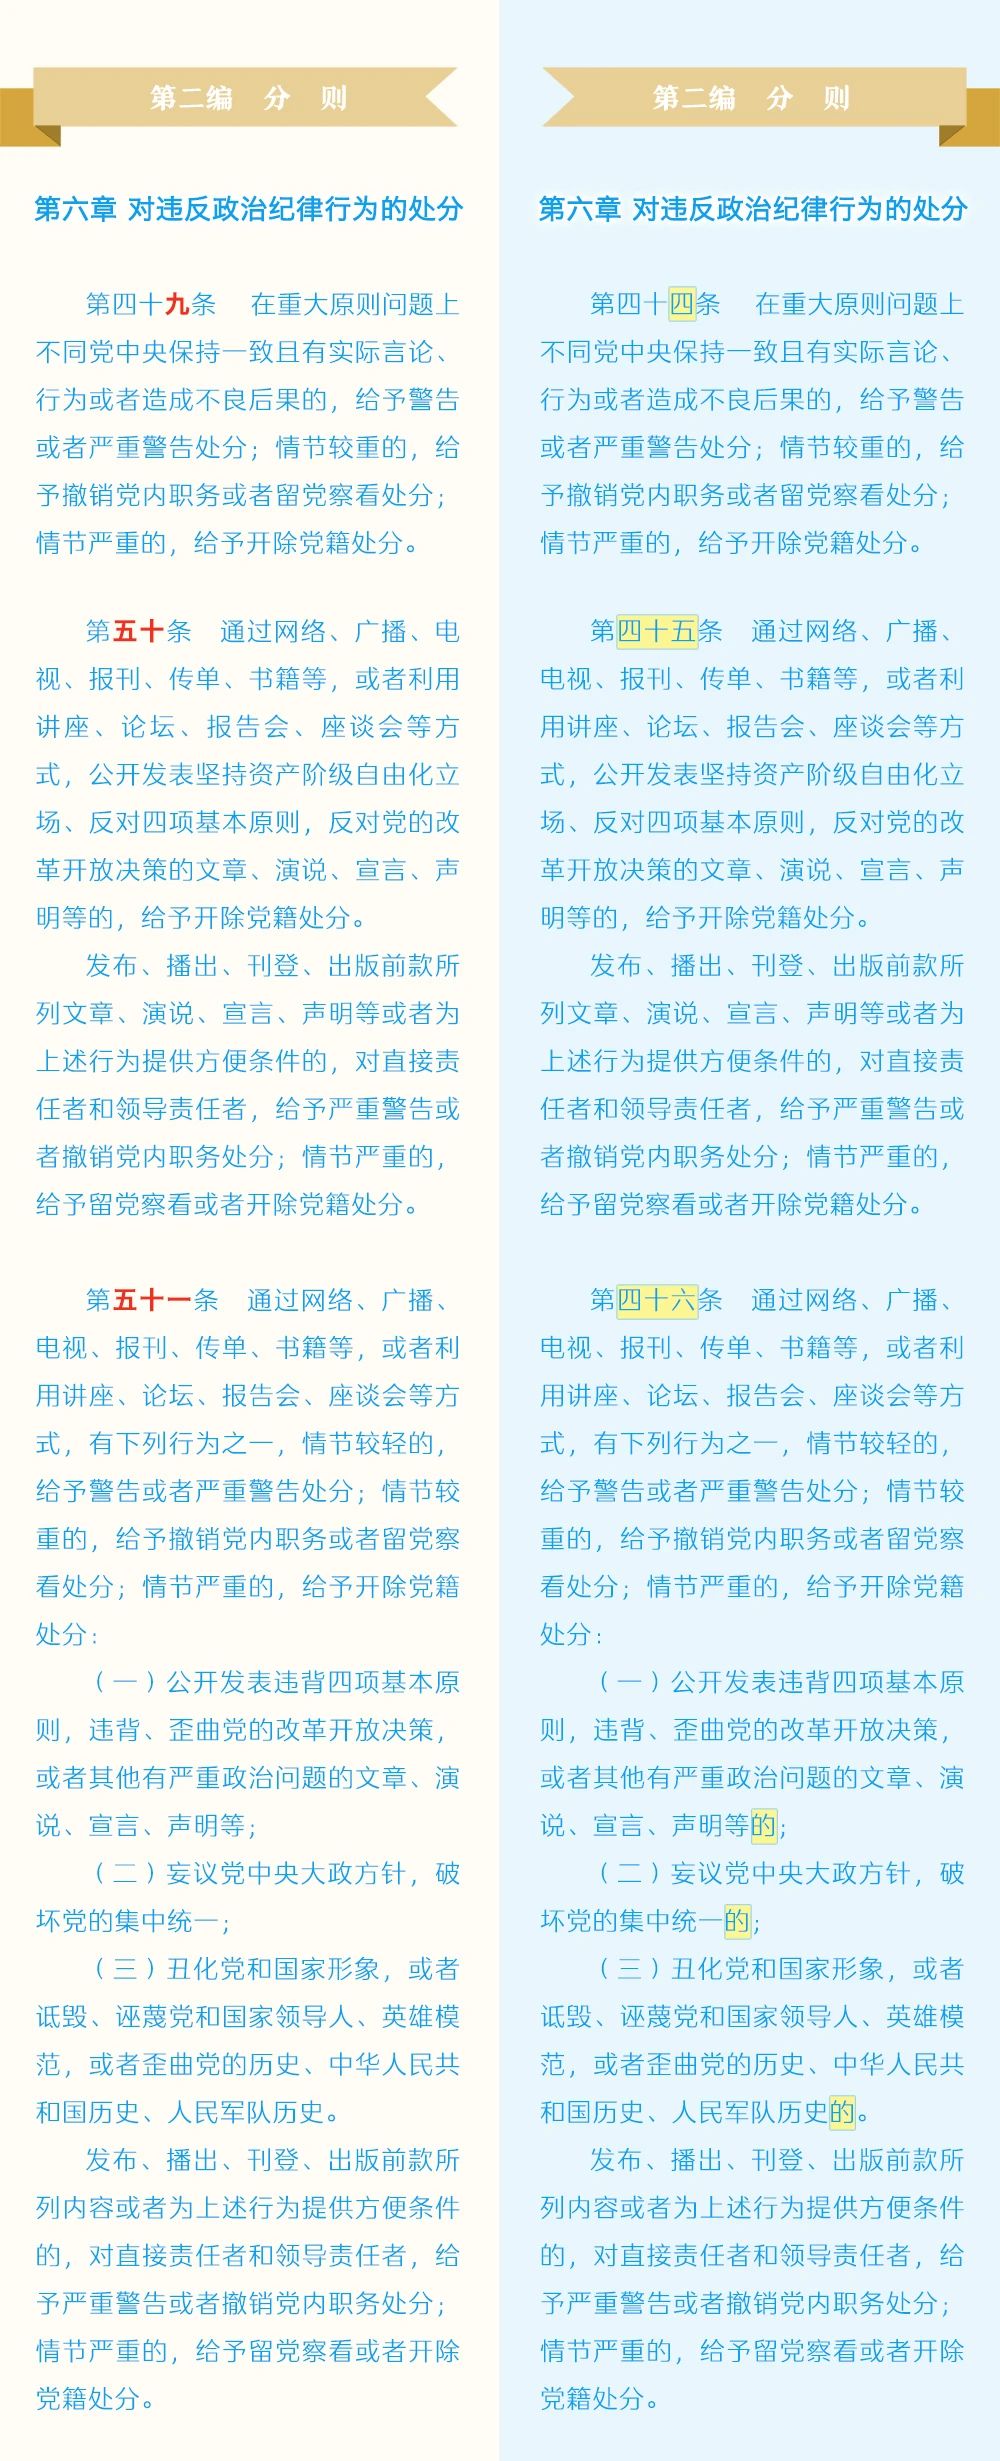 《中国共产党纪律处分条例》修订条文对照表7.jpg